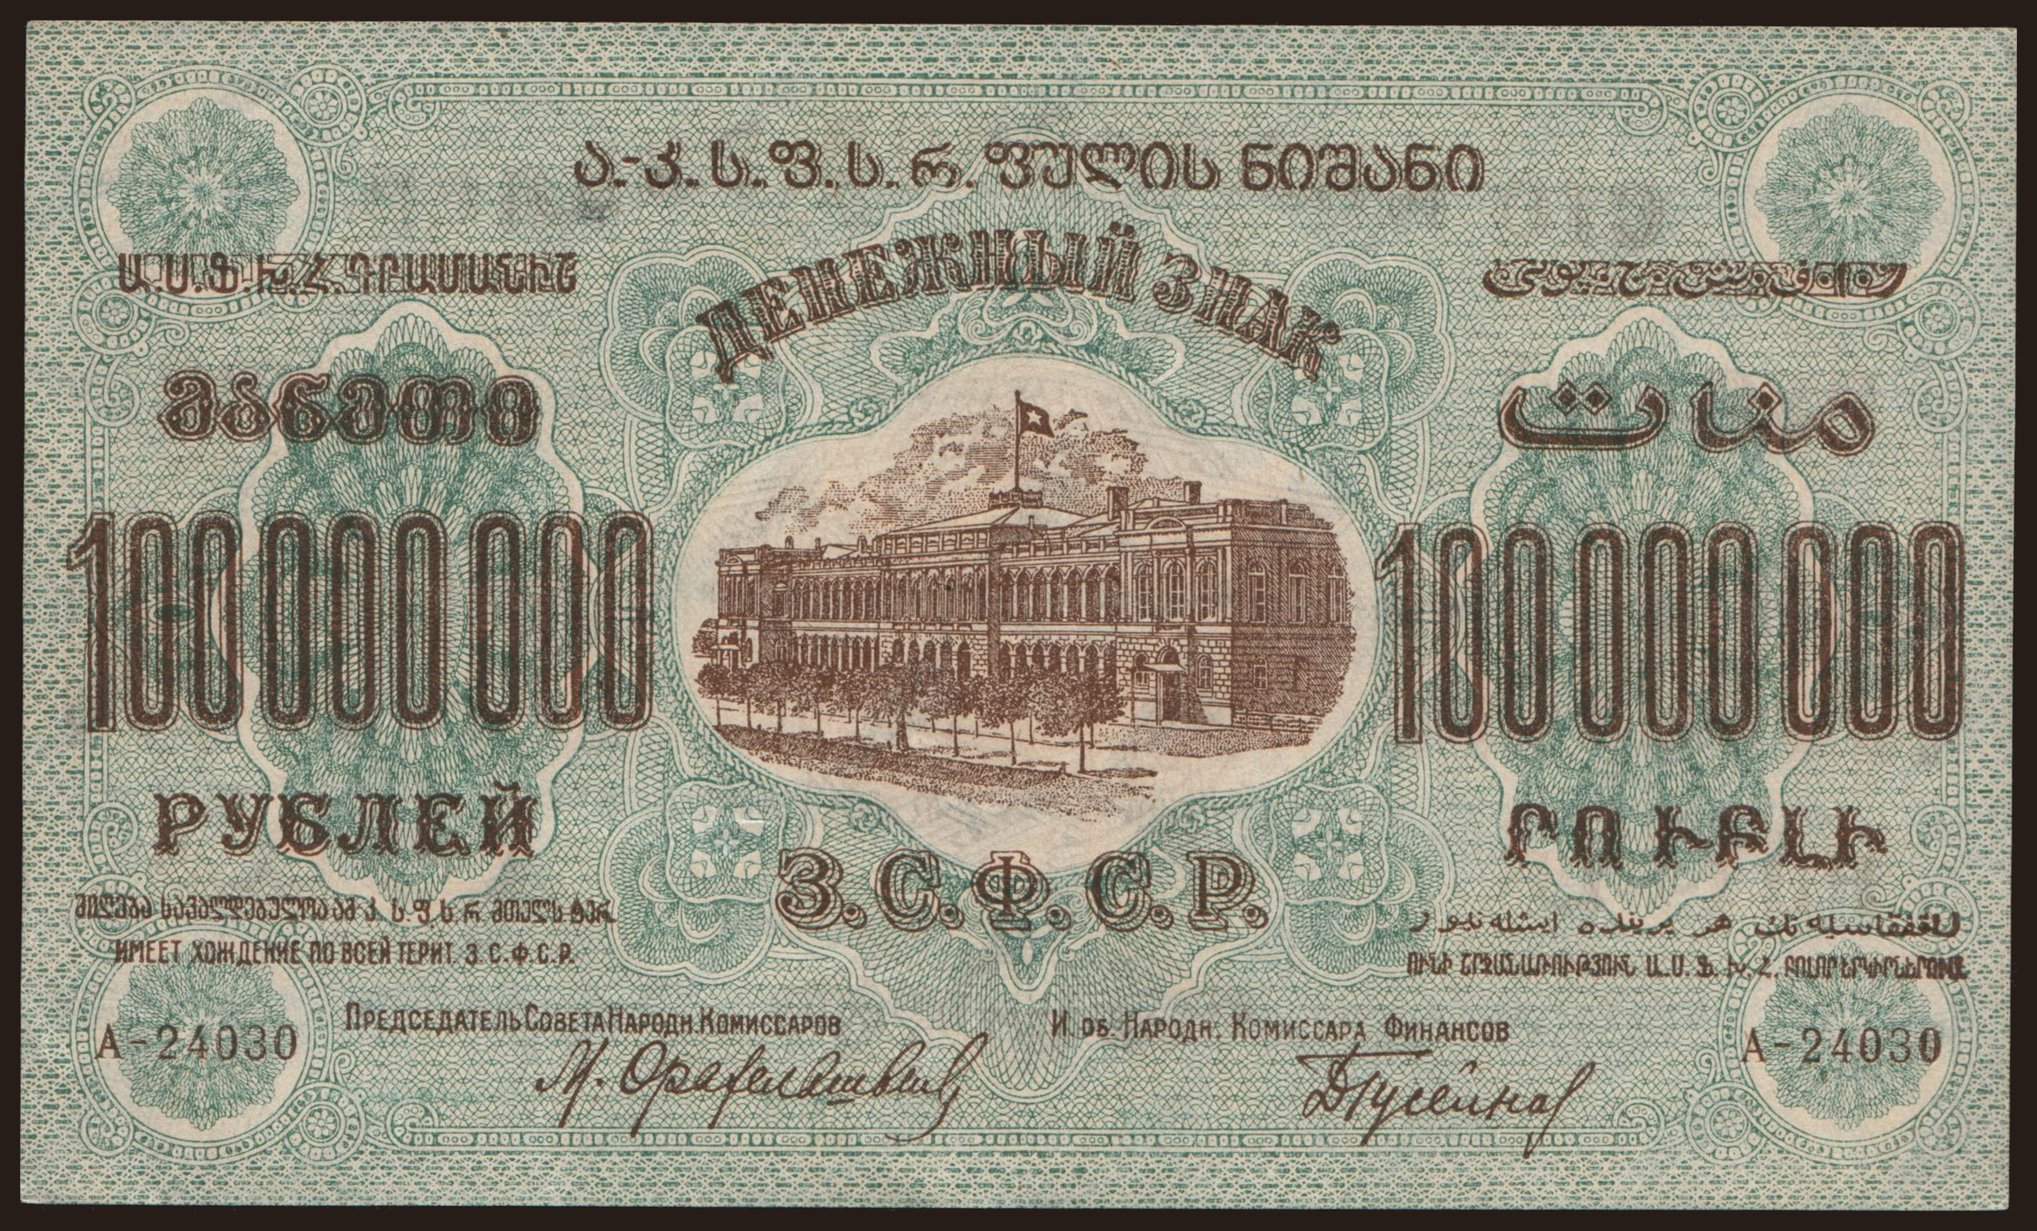 Transcaucasia, 100.000.000 rubel, 1924